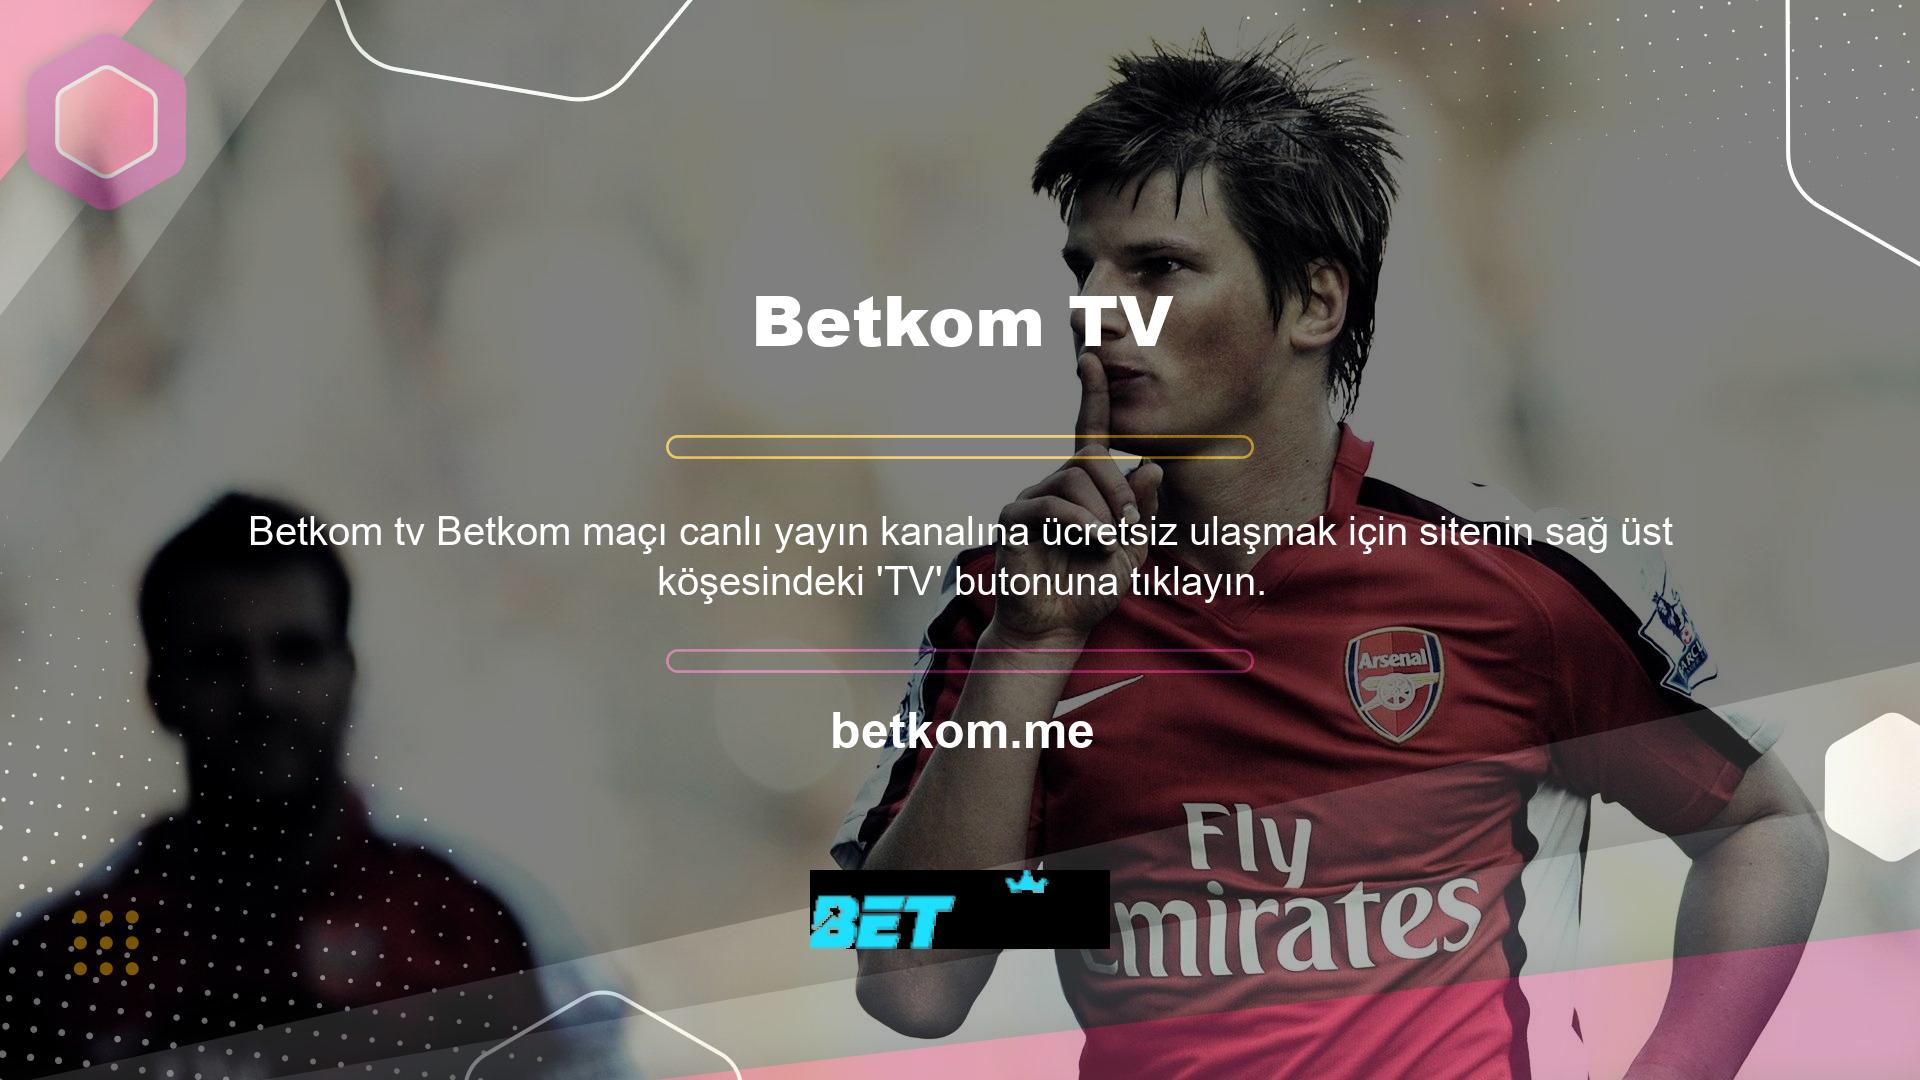 TV Player özelliği ile tüm lig maçlarını canlı takip edebilirsiniz